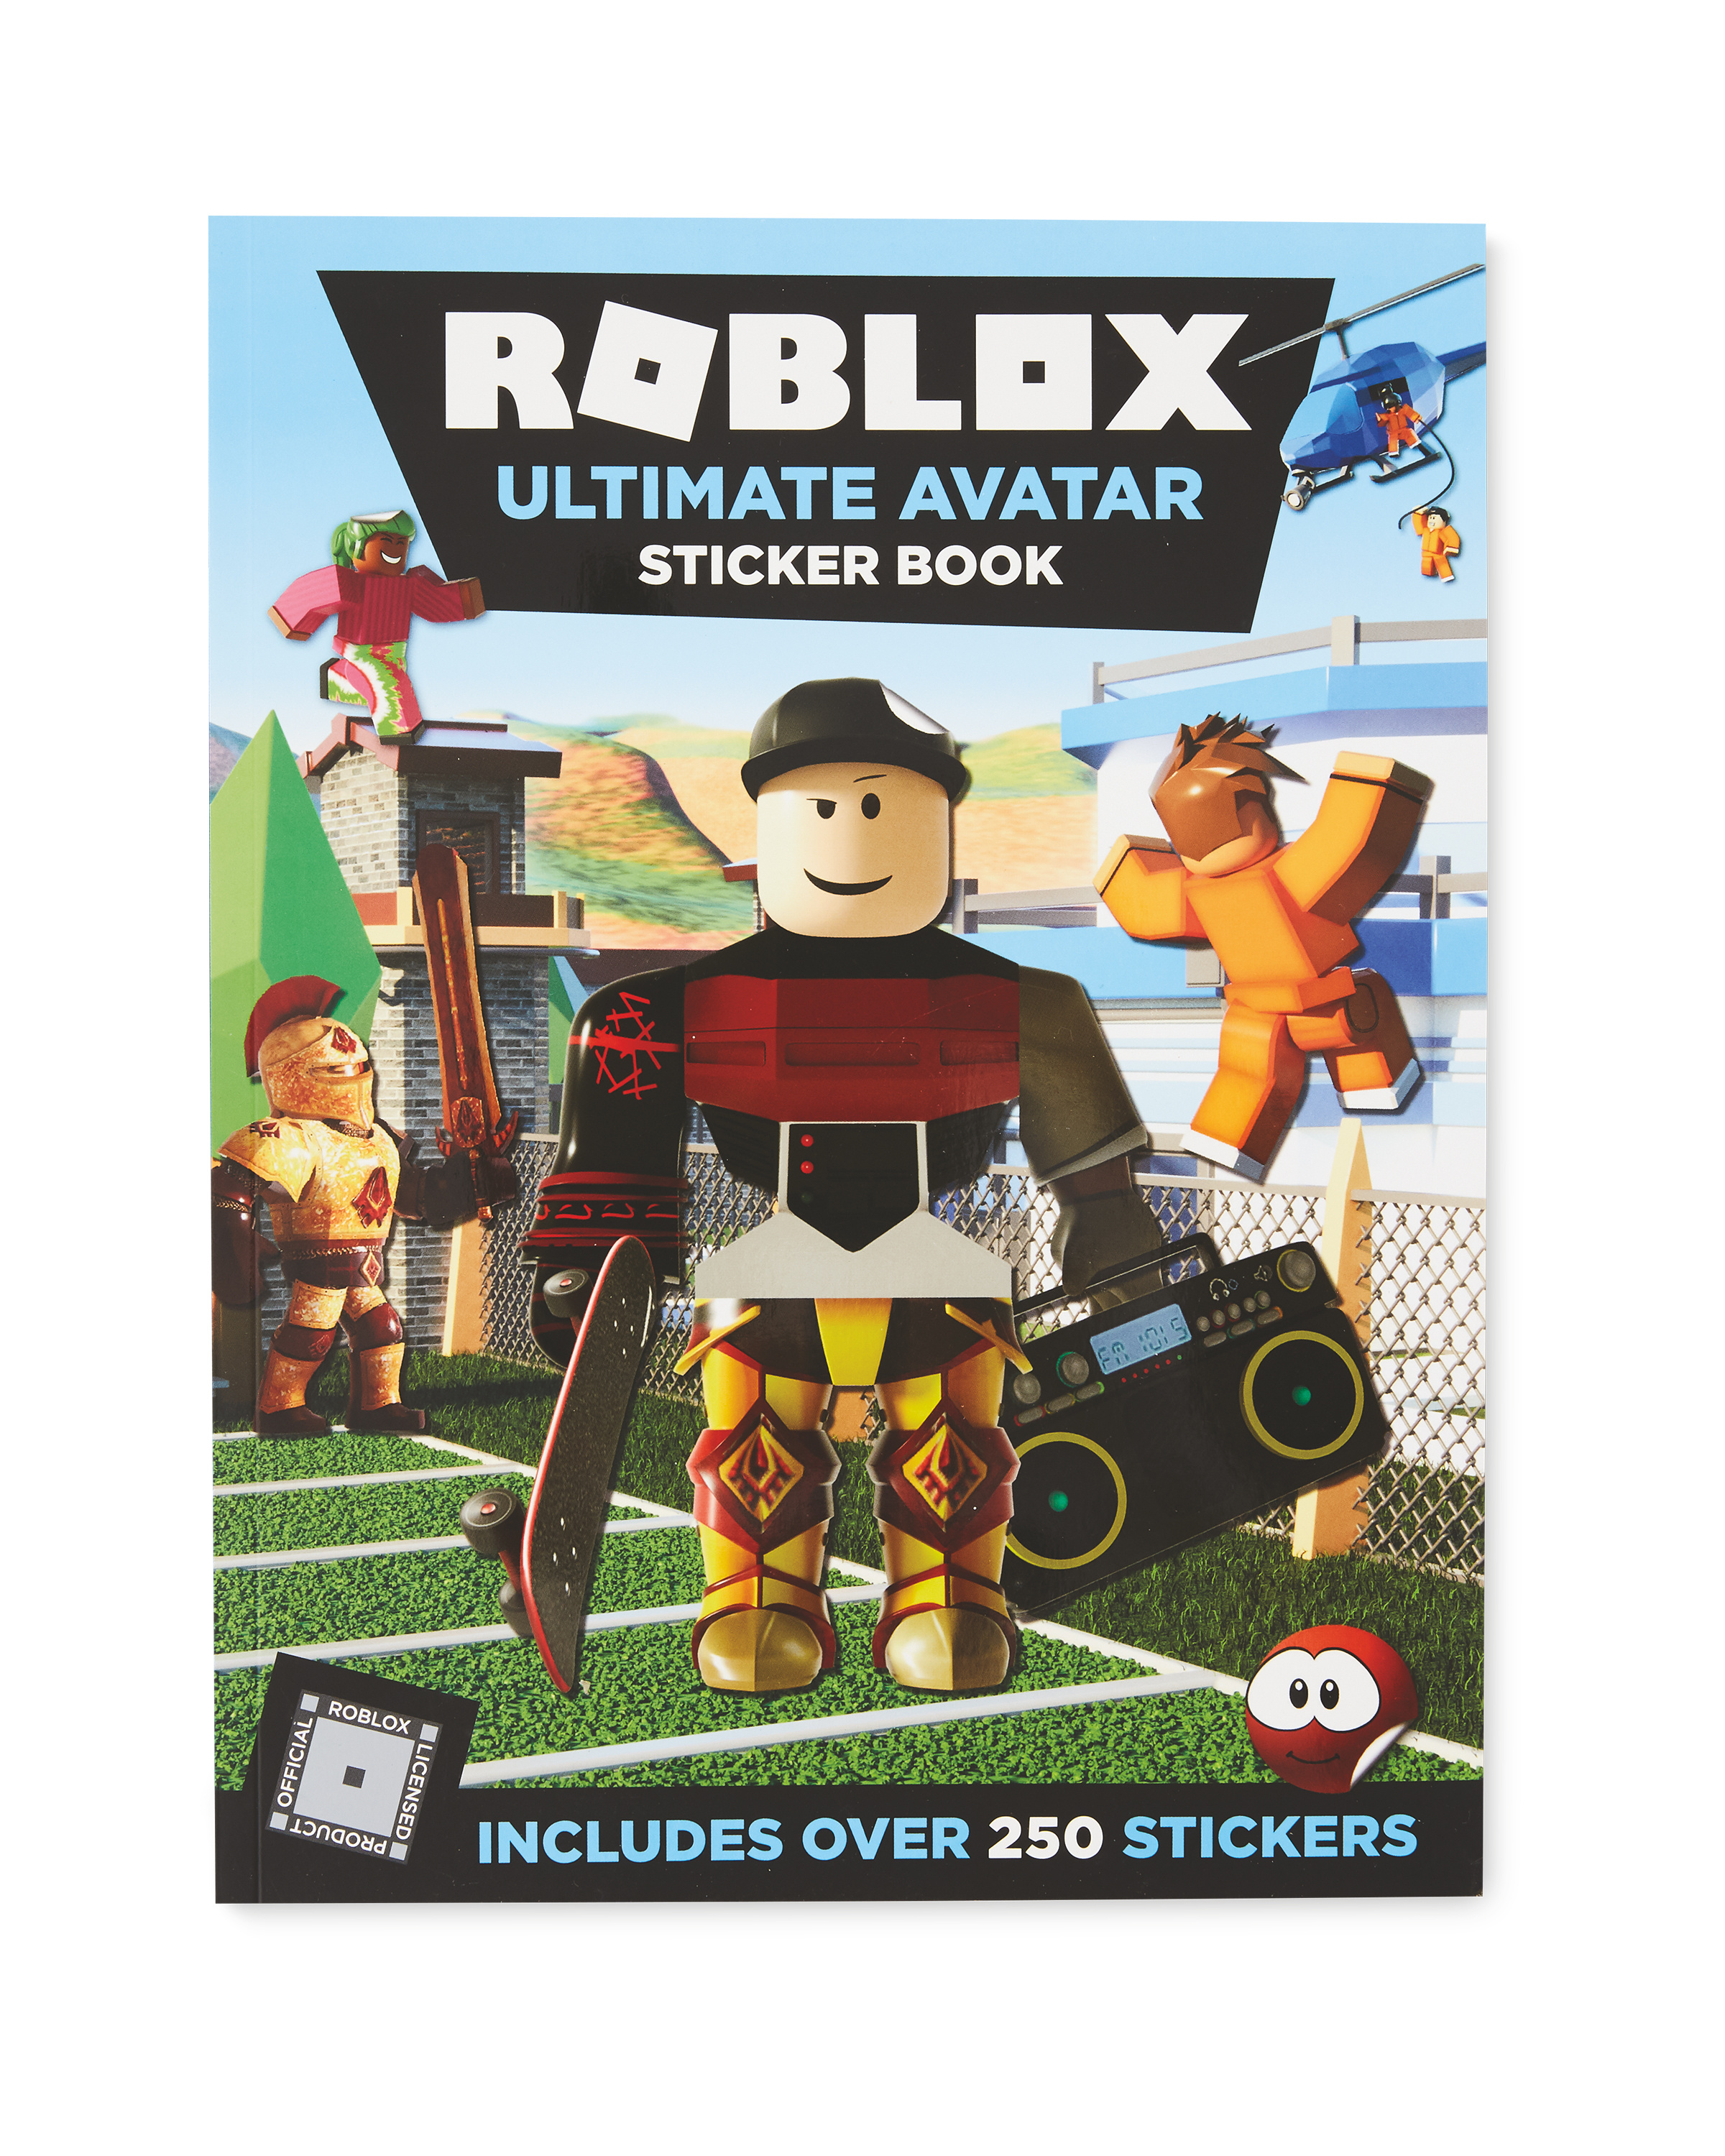 Roblox Ultimate Avatar Sticker Book Aldi Uk - gusto hotel roblox